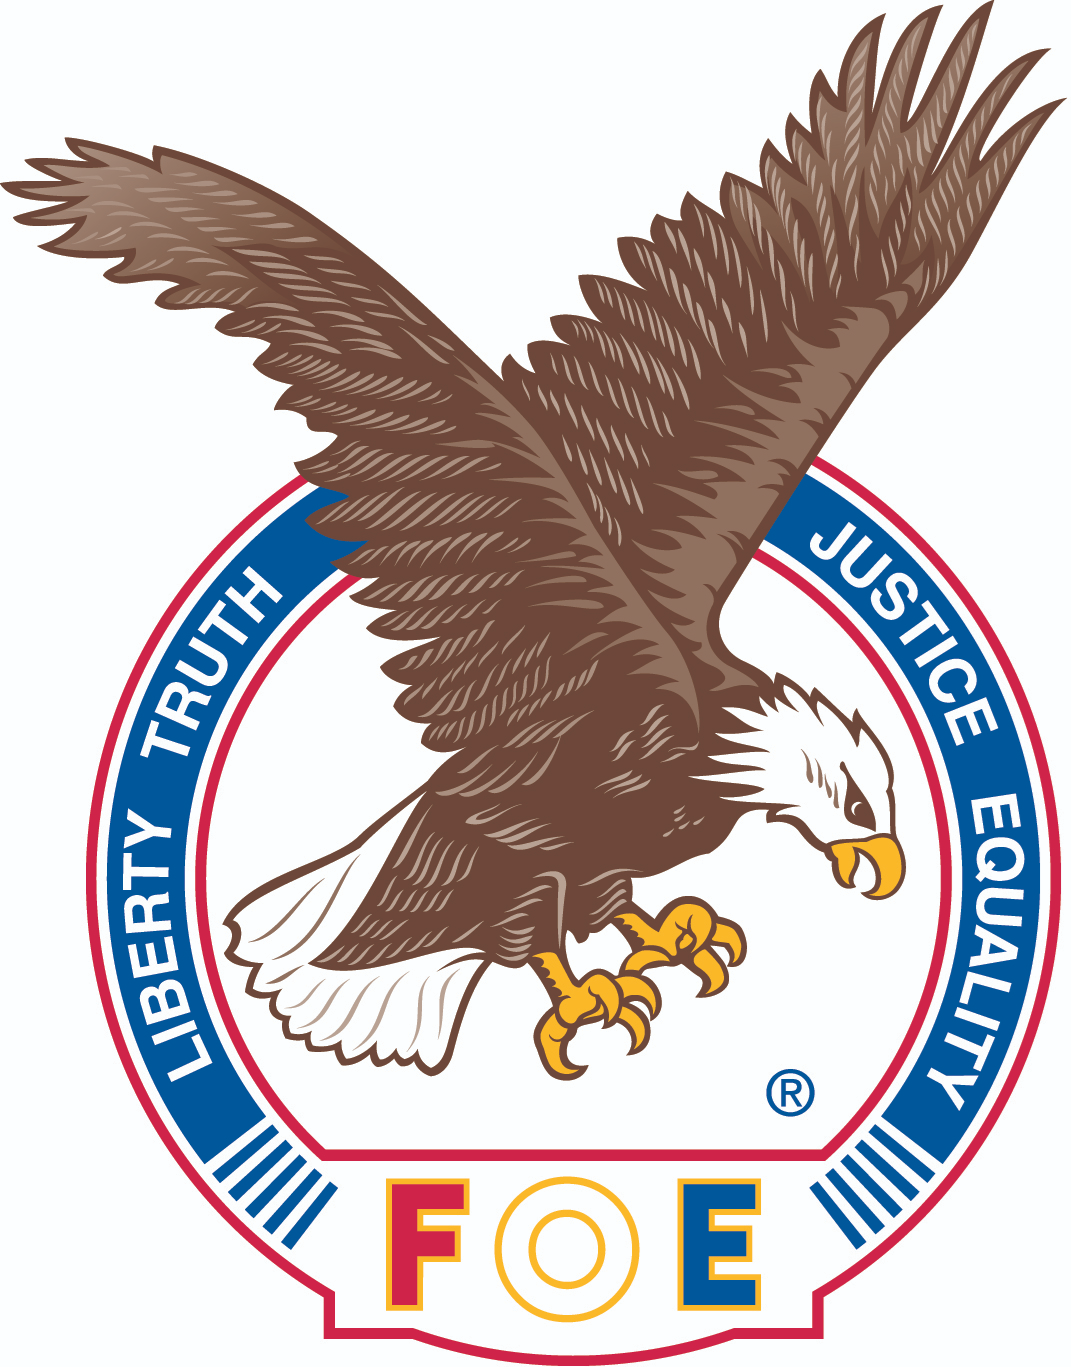 Fraternal Order of Eagles logo